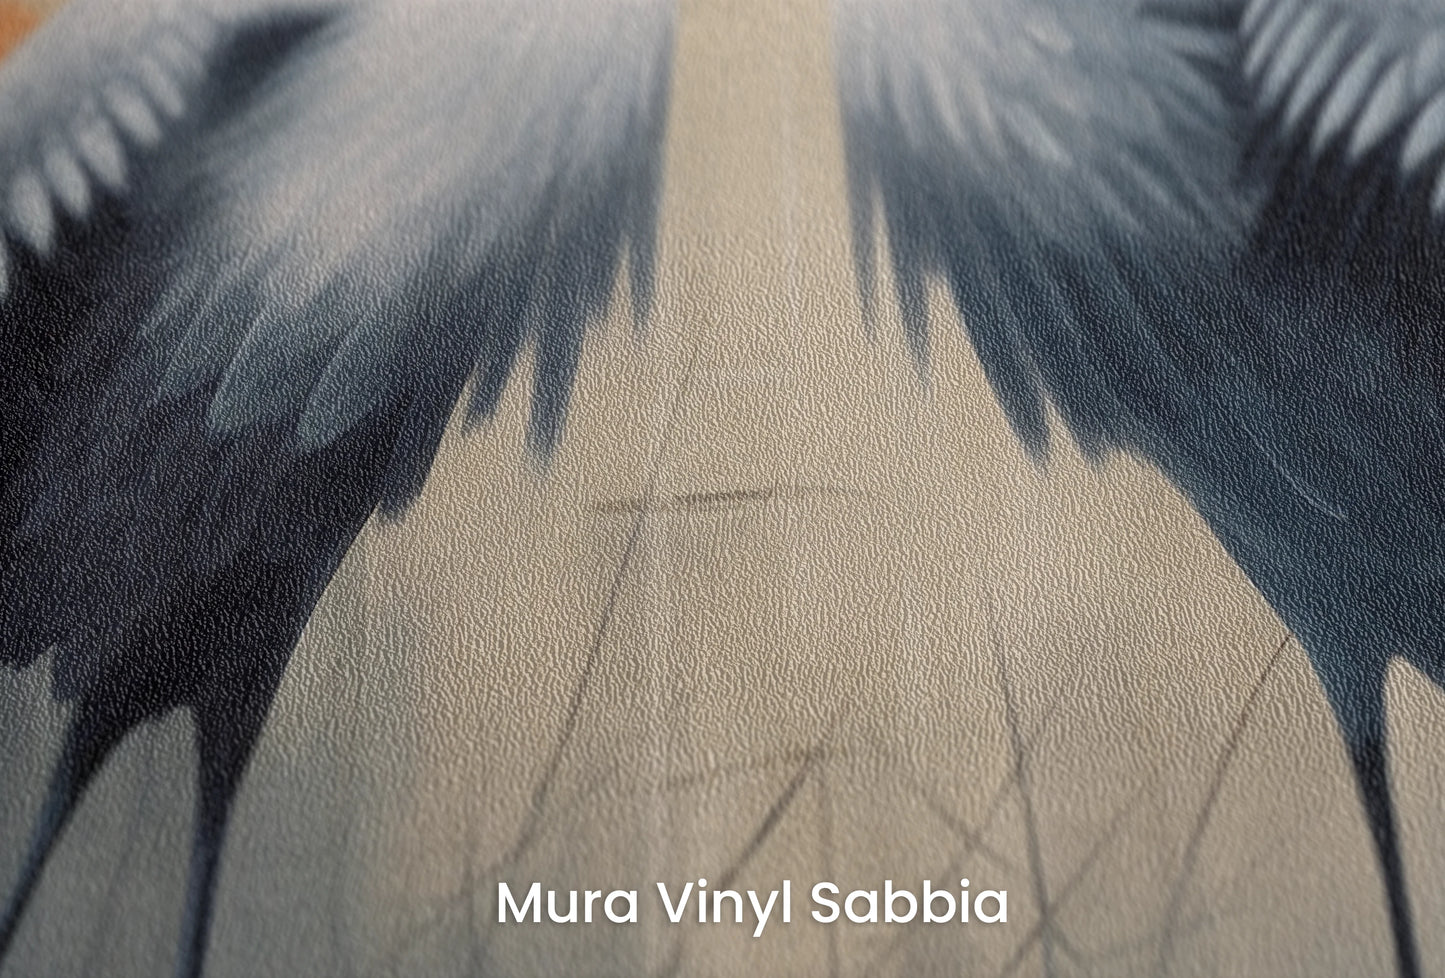 Zbliżenie na artystyczną fototapetę o nazwie Solemn Vow na podłożu Mura Vinyl Sabbia struktura grubego ziarna piasku.